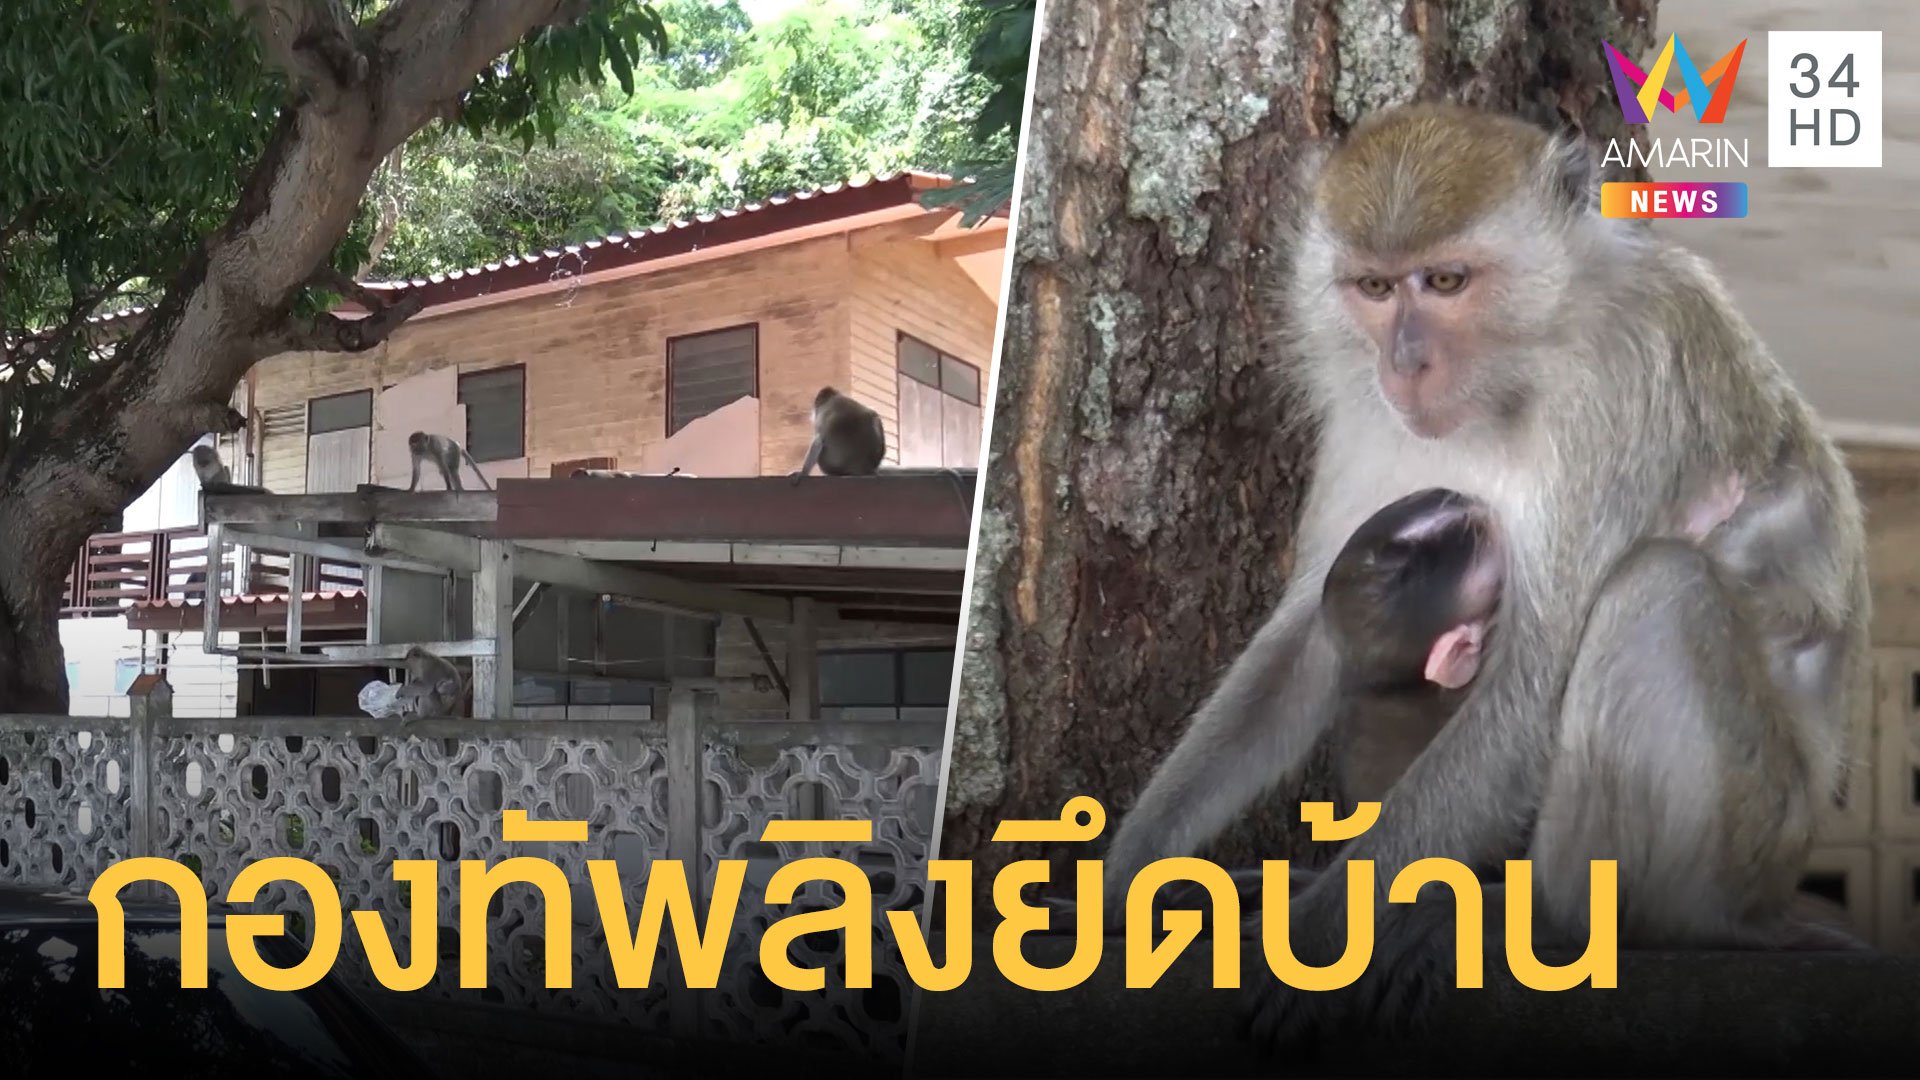 ฝูงลิงยึดบ้าน เจ้าของบ้านเซ็ง หยุด 4 วันต้องรบกับลิง | ข่าวอรุณอมรินทร์ | 8 ก.ย. 63 | AMARIN TVHD34